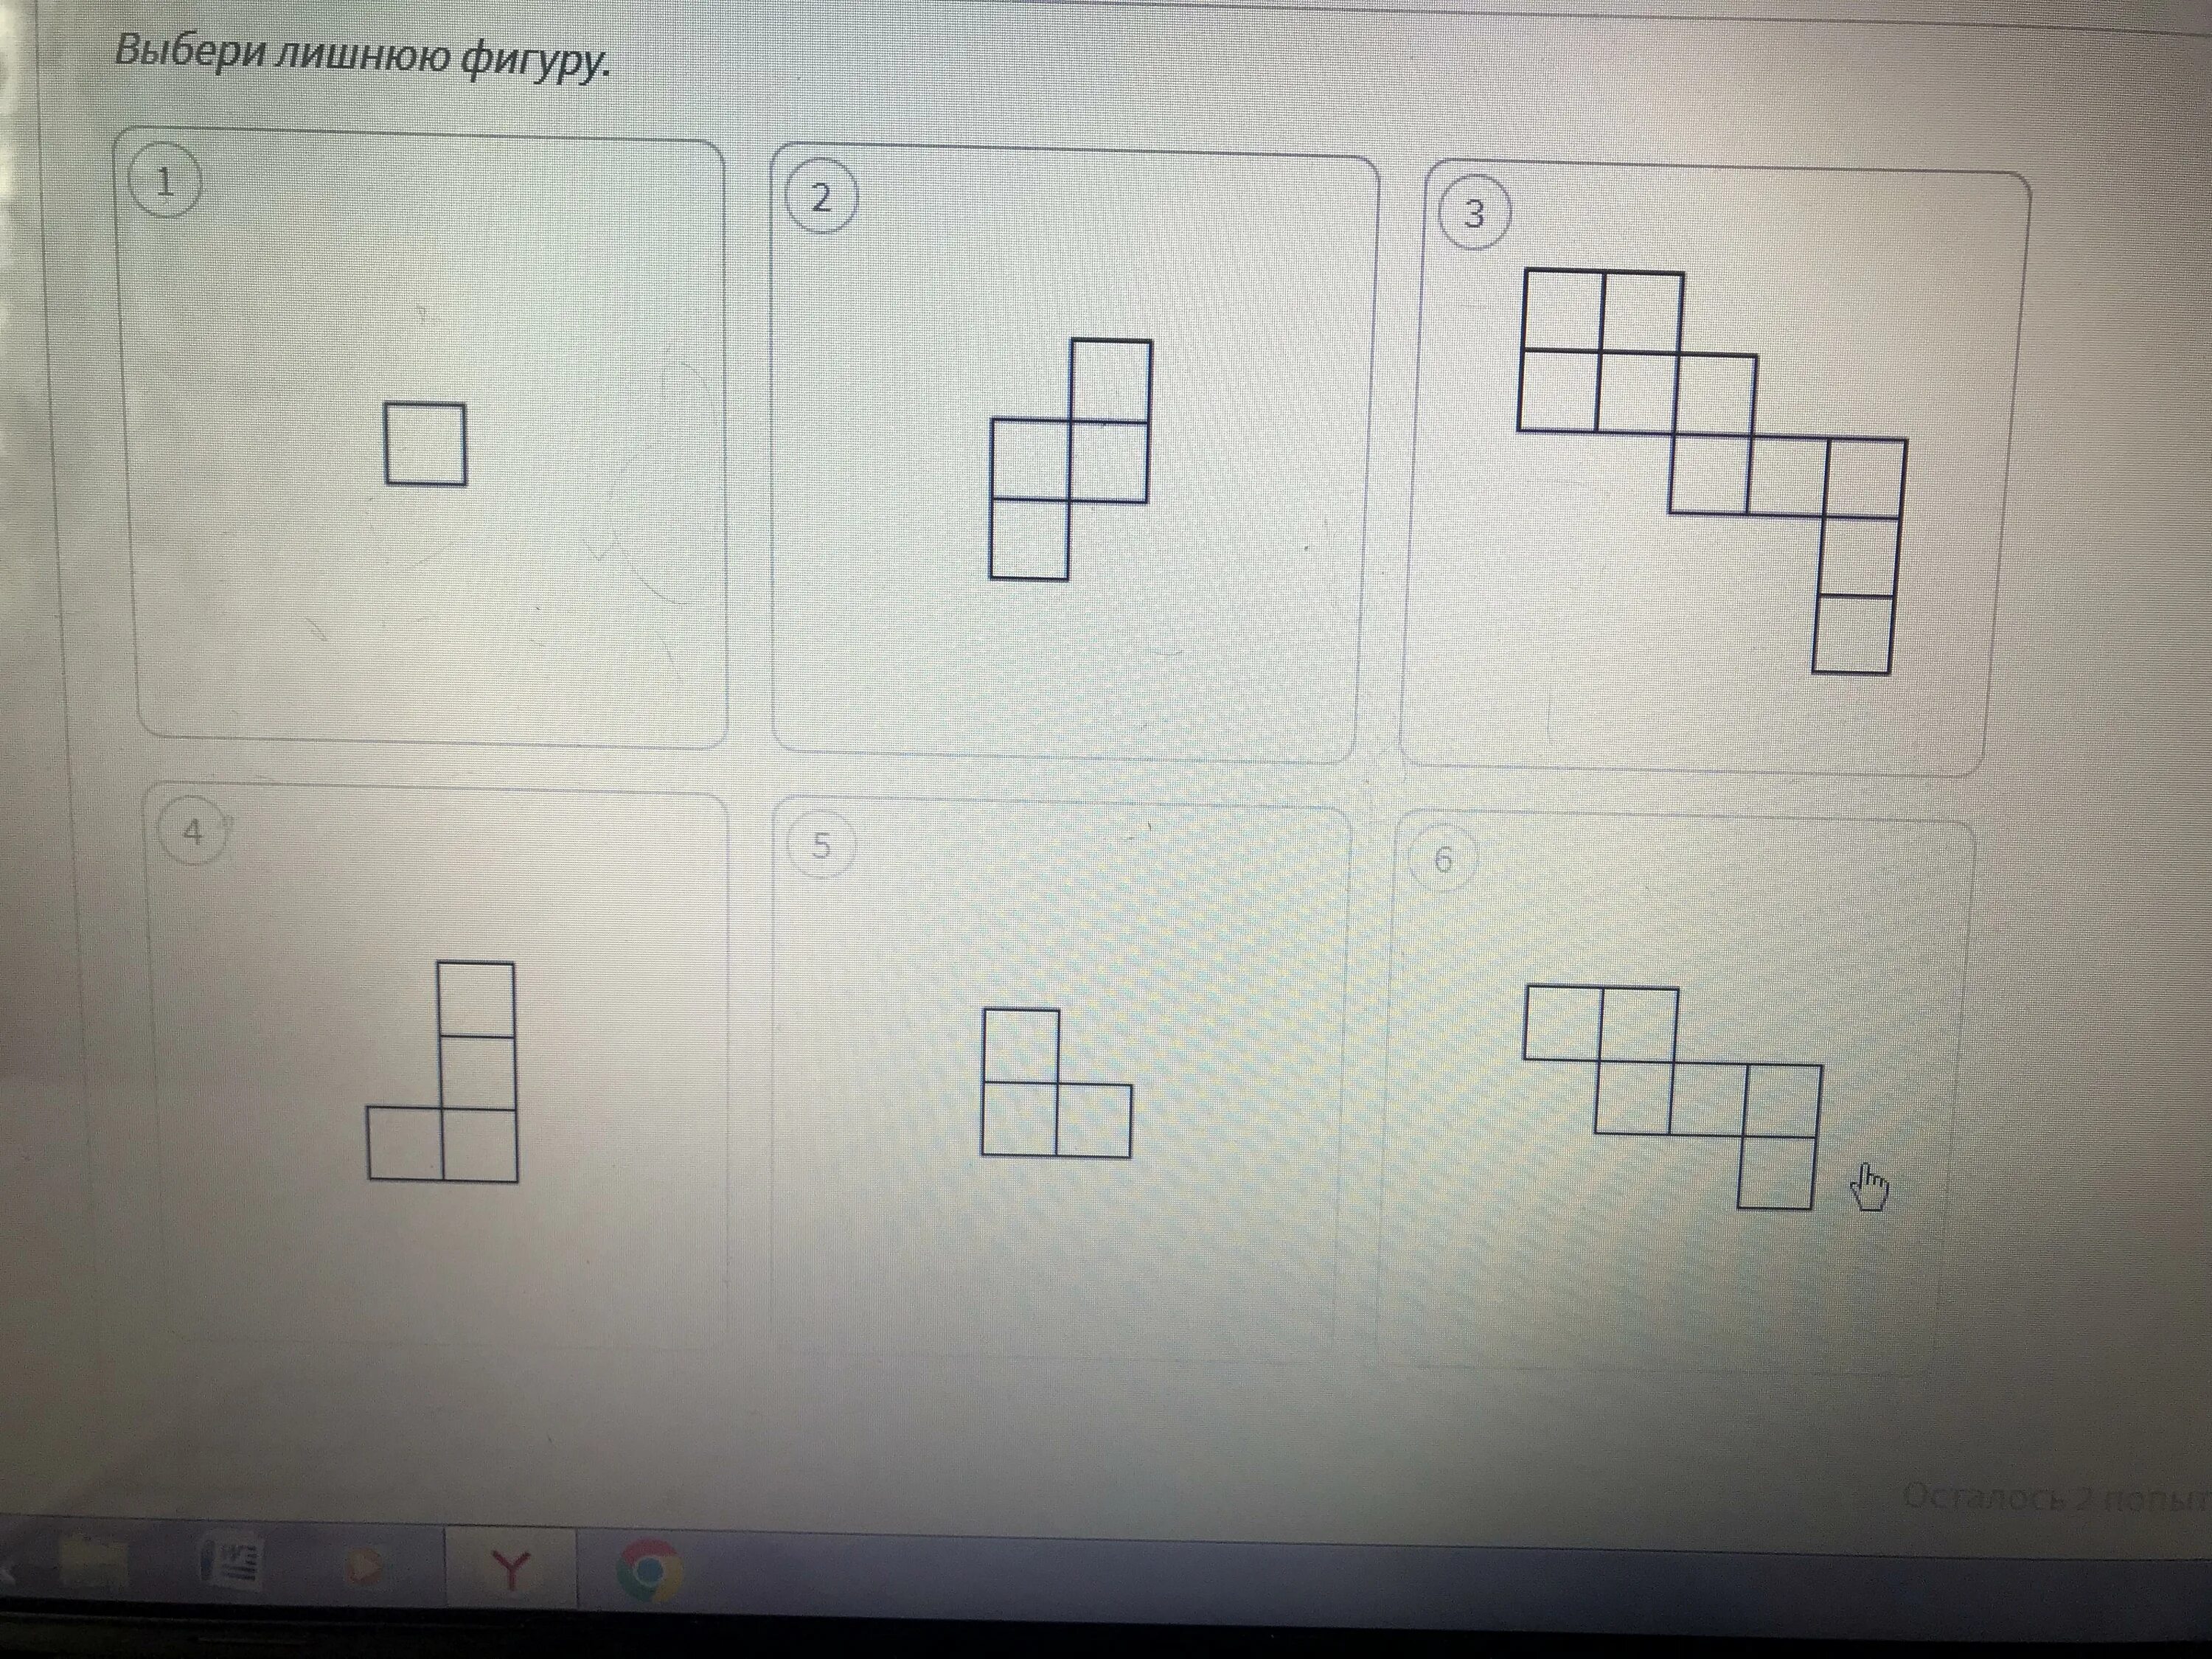 Фигуры из 6 квадратов. Фигуры из шести равных квадратов. Выбери лишнюю фигуру. Фигуры из 5 квадратиков.